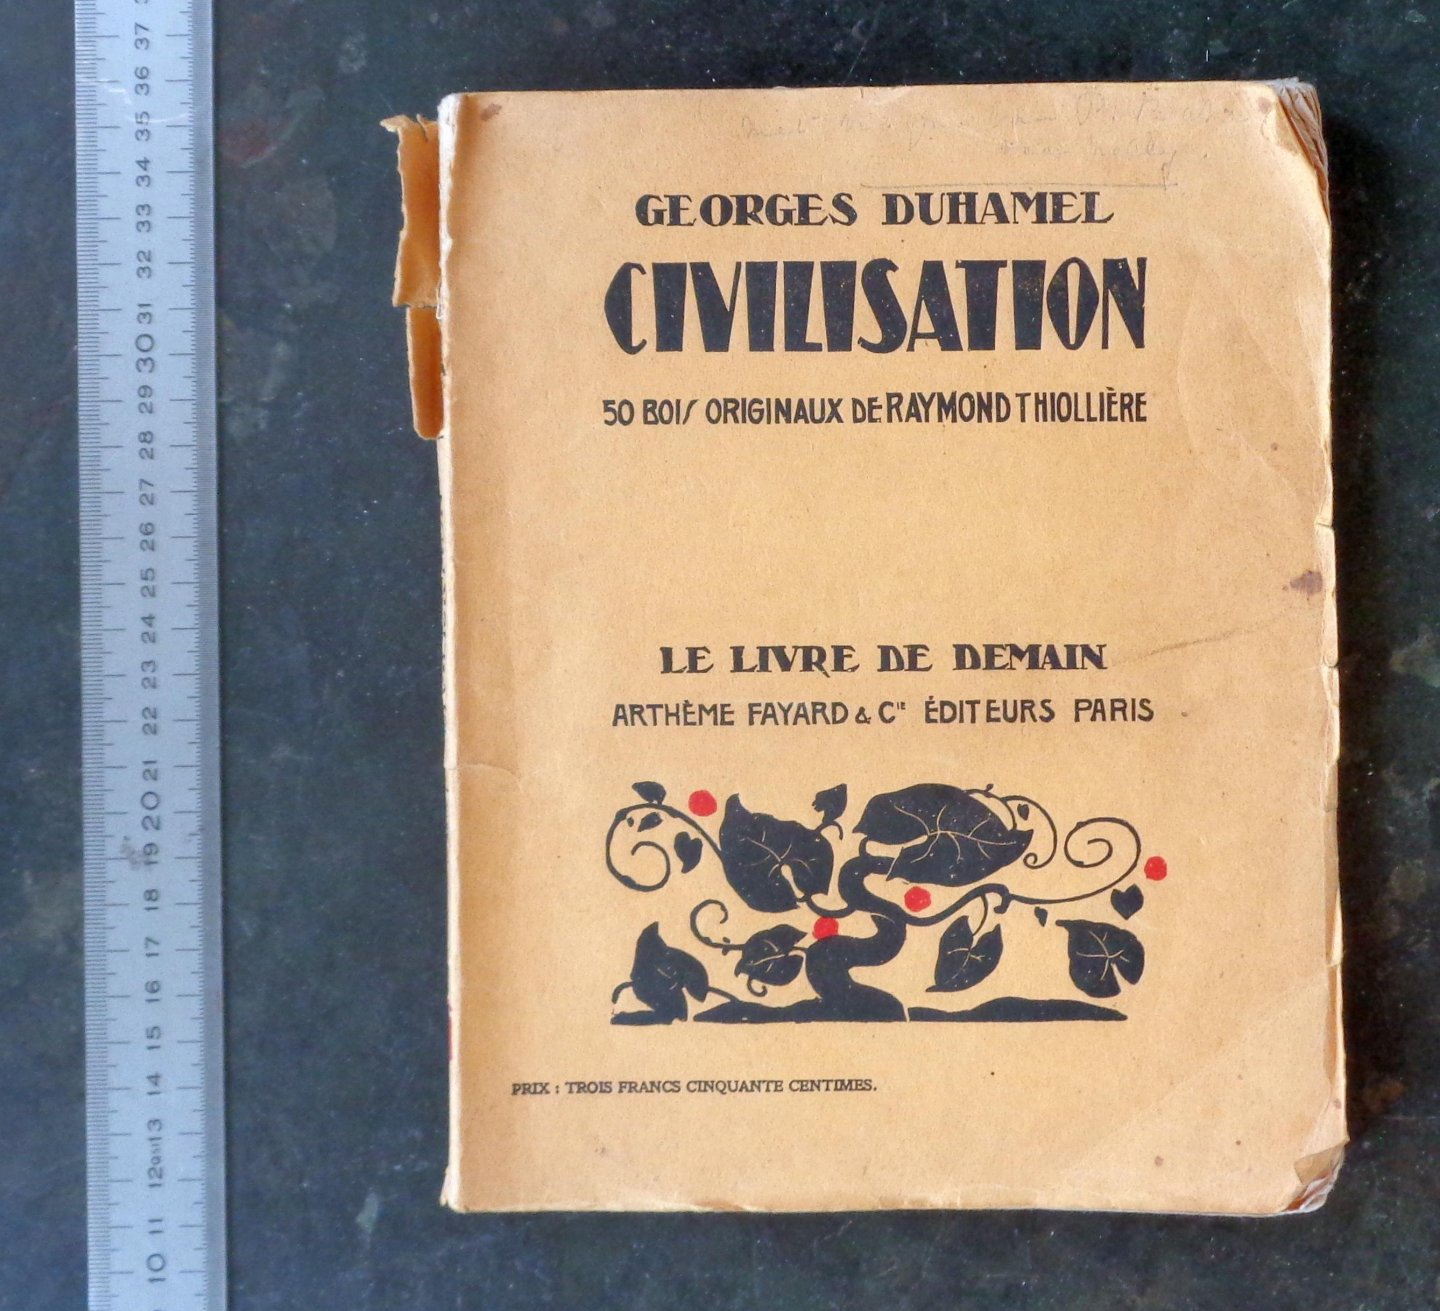 DUHAMEL, GEORGES - Civilisation 1914 - 1917. 50 bois orginaux de Raymond Thiolliere.